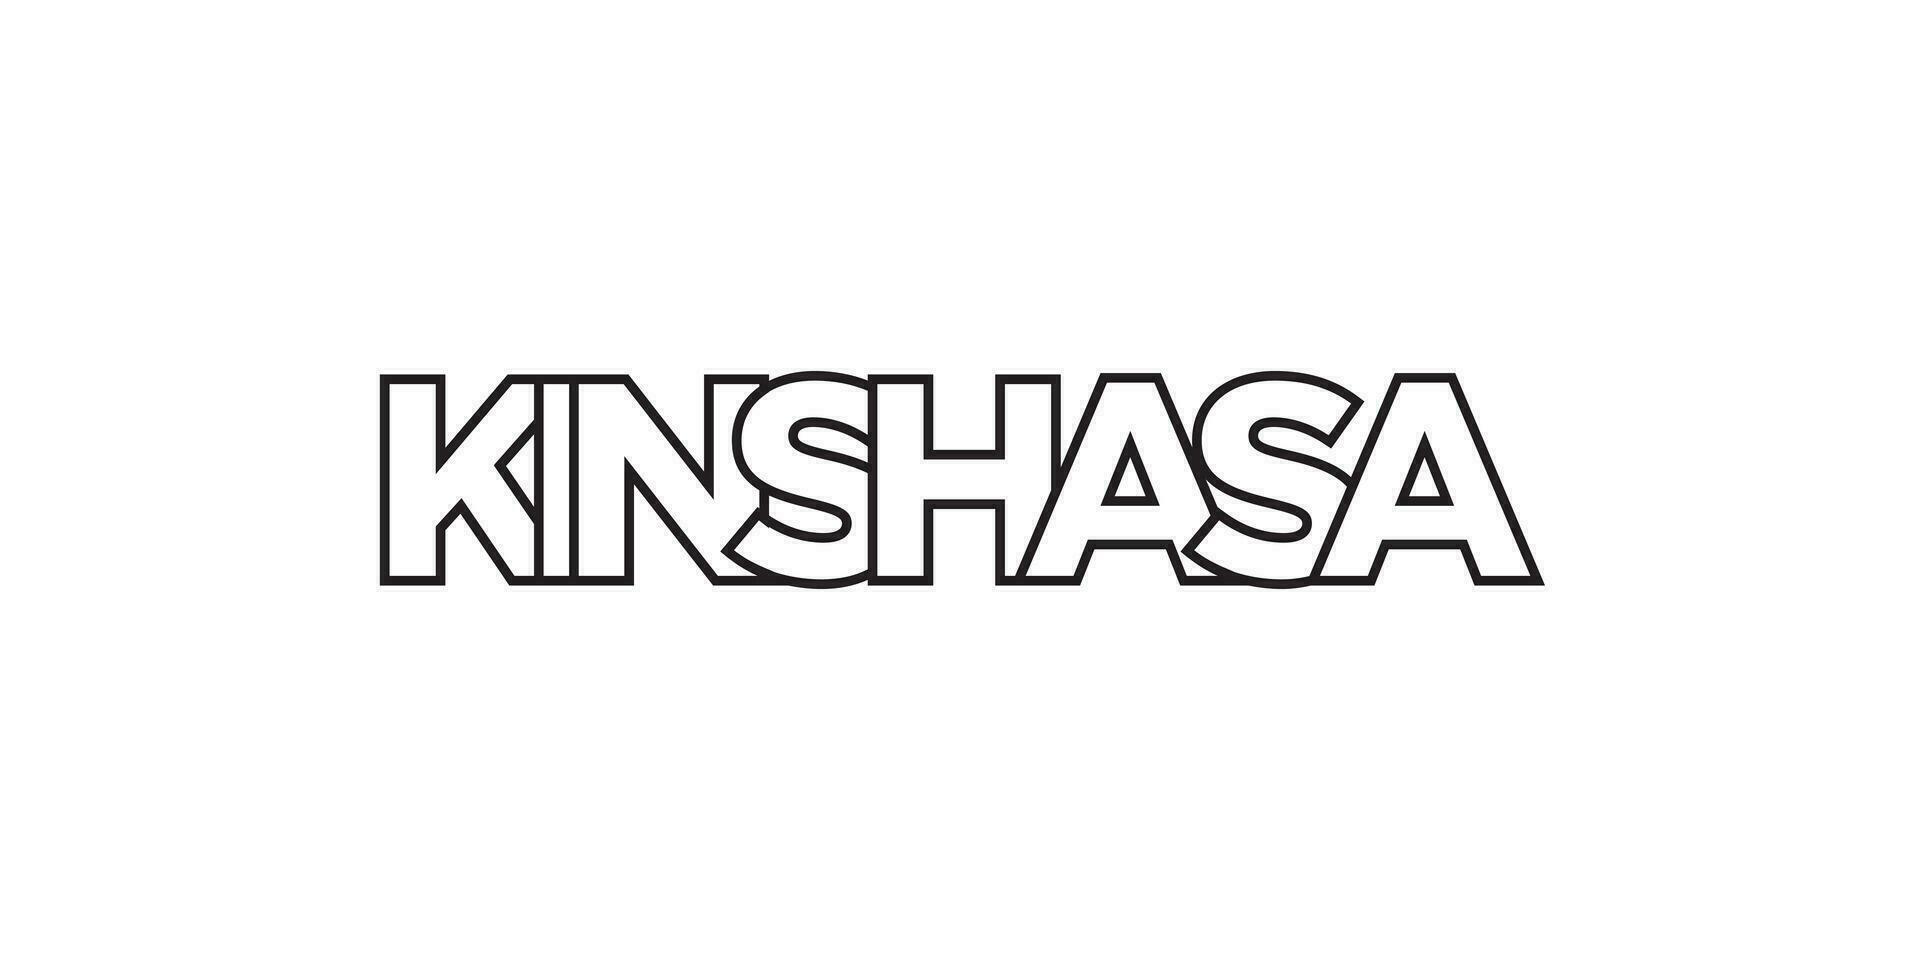 Kinshasa im das Kongo Emblem. das Design Eigenschaften ein geometrisch Stil, Vektor Illustration mit Fett gedruckt Typografie im ein modern Schriftart. das Grafik Slogan Beschriftung.